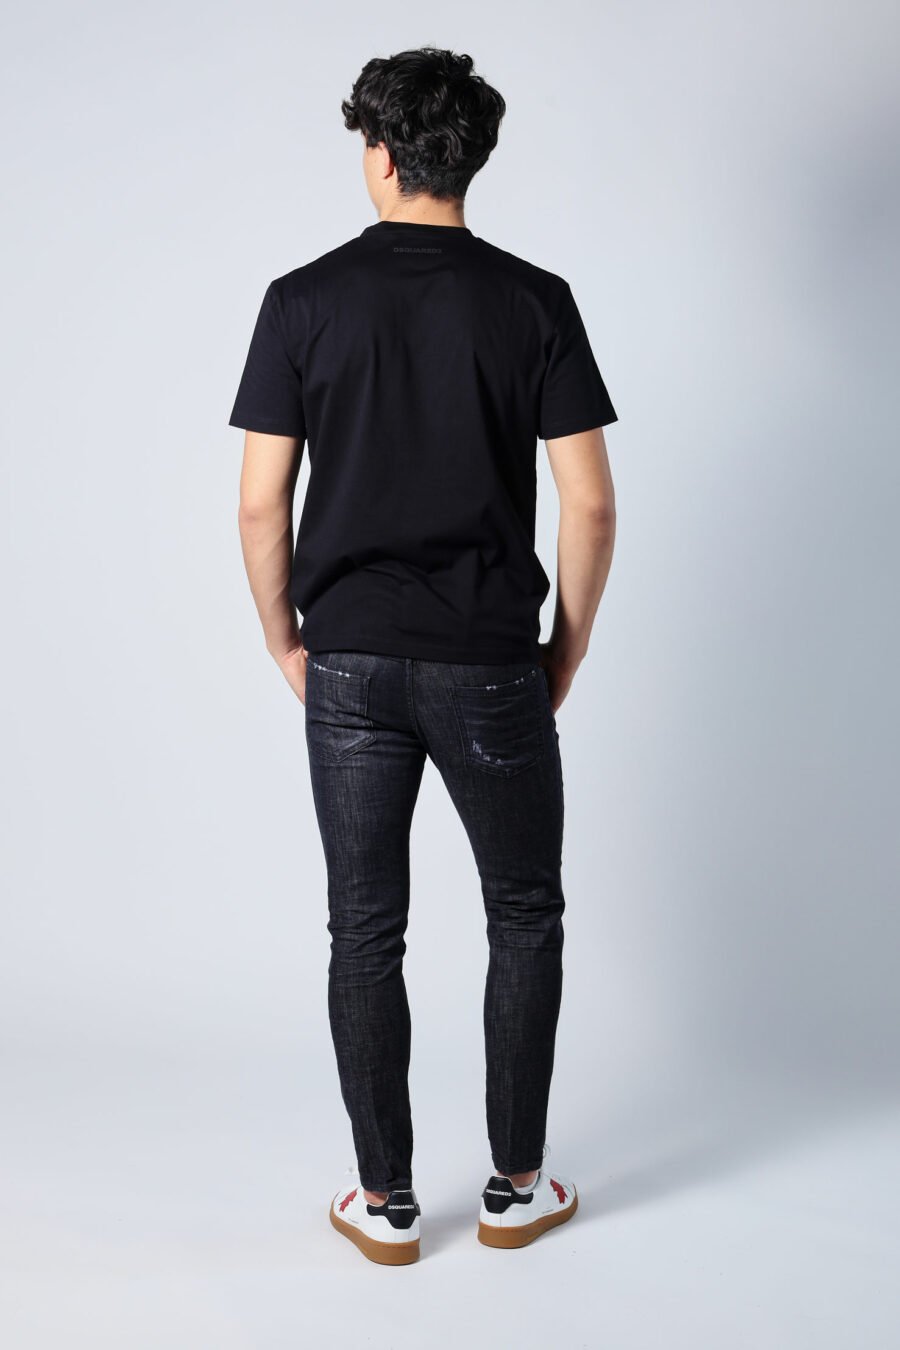 Halbgetragene schwarze "Skater-Jeans" - Untitled Catalog 05681